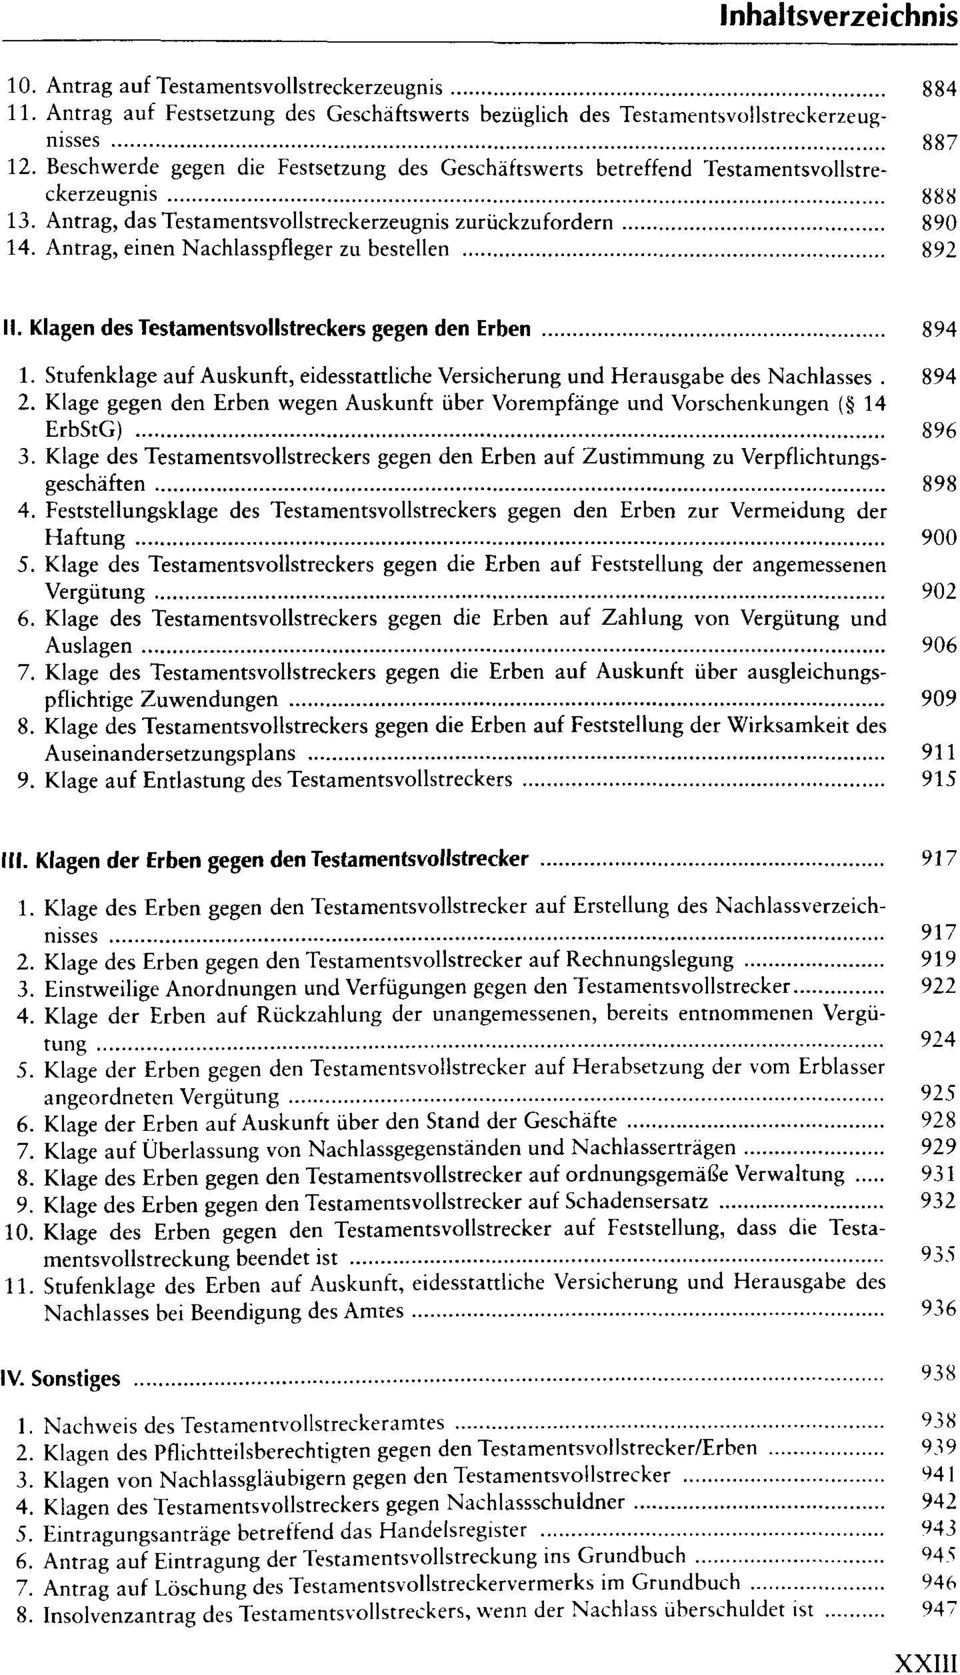 Munchener Prozessformularbuch Erbrecht Pdf Free Download